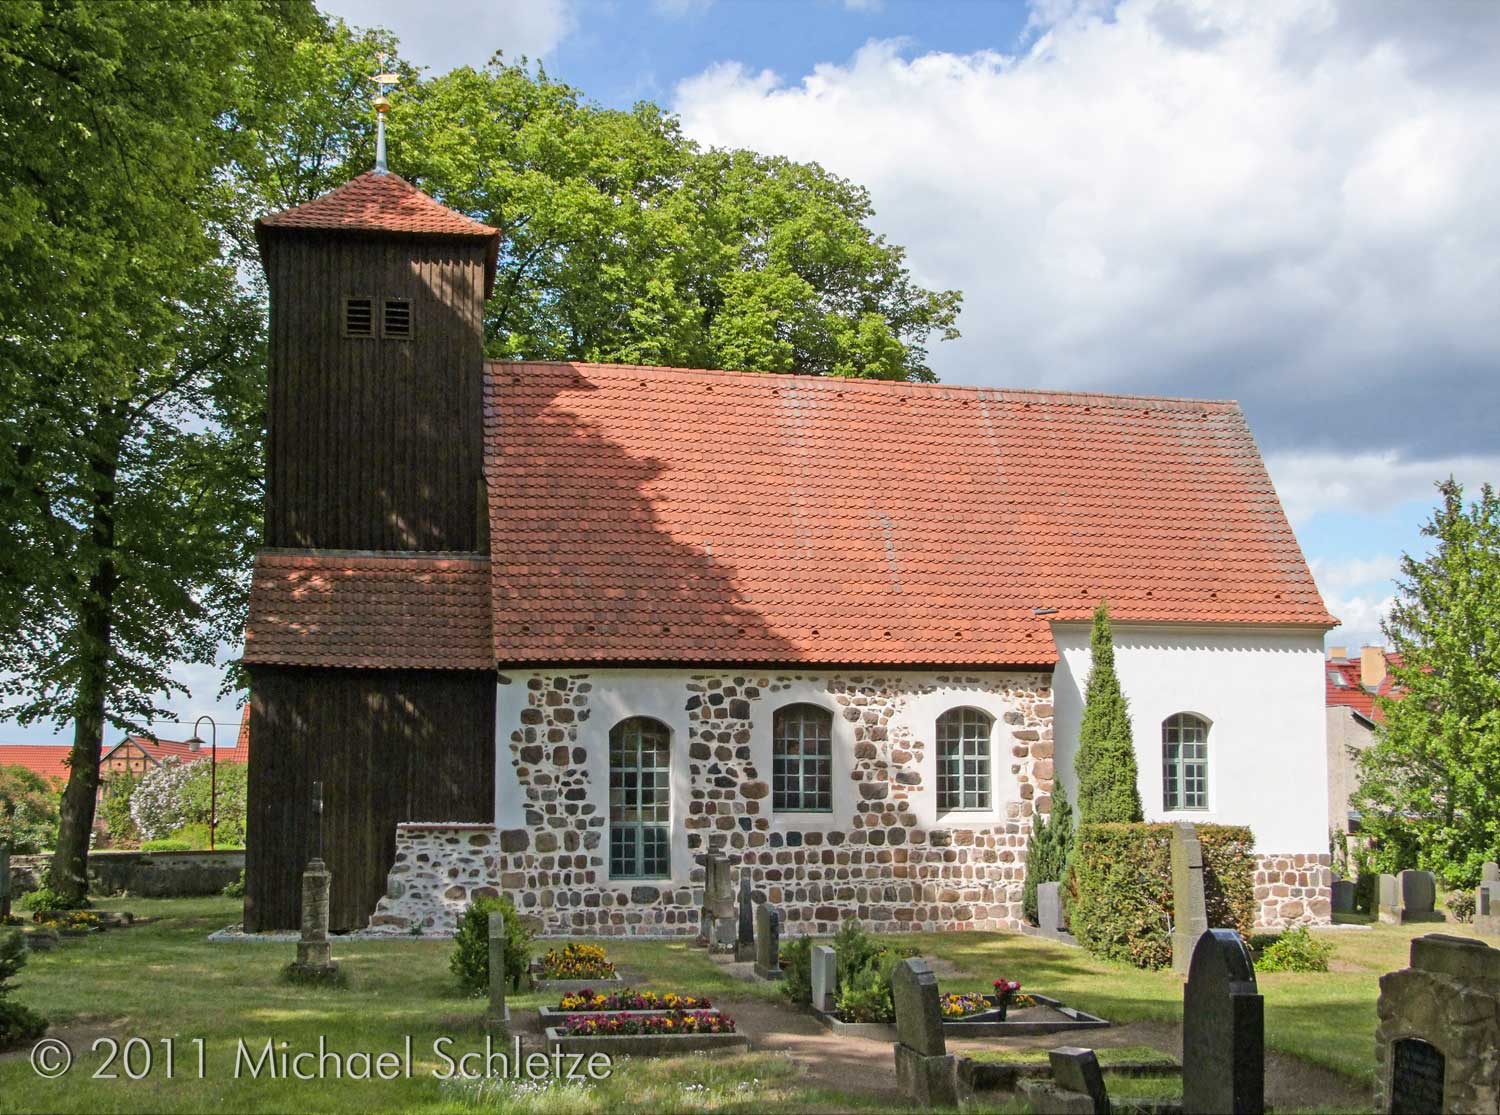 Muss zwischenzeitlich stark beschädigt gewesen sein: Die Dorfkirche von Schönefeld